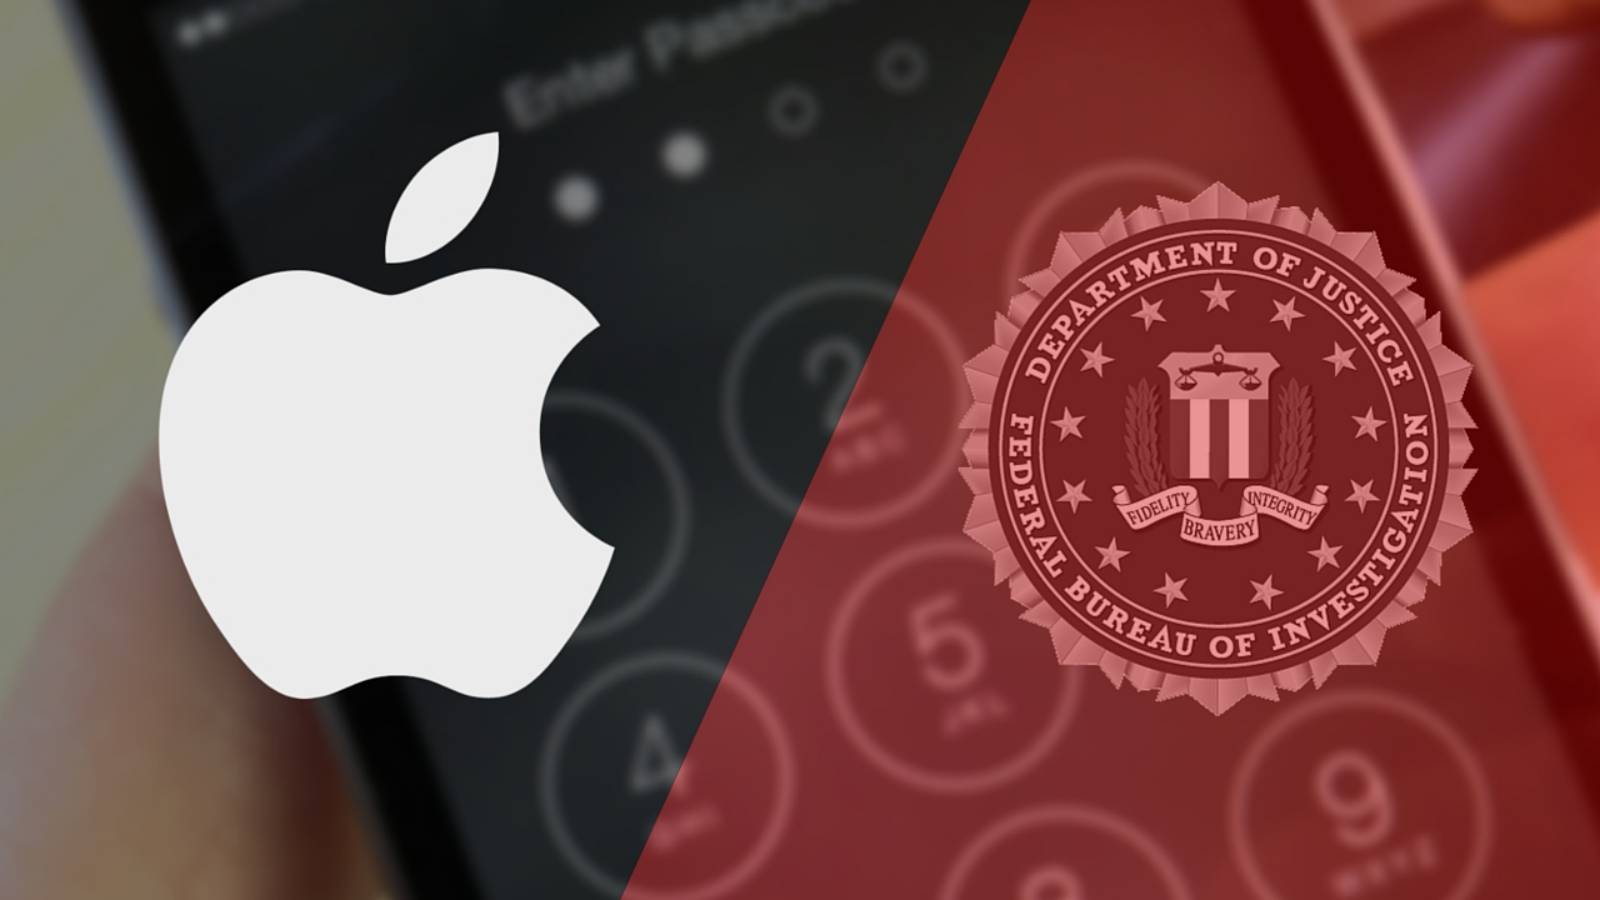 Guerra del FBI Apple iPhone